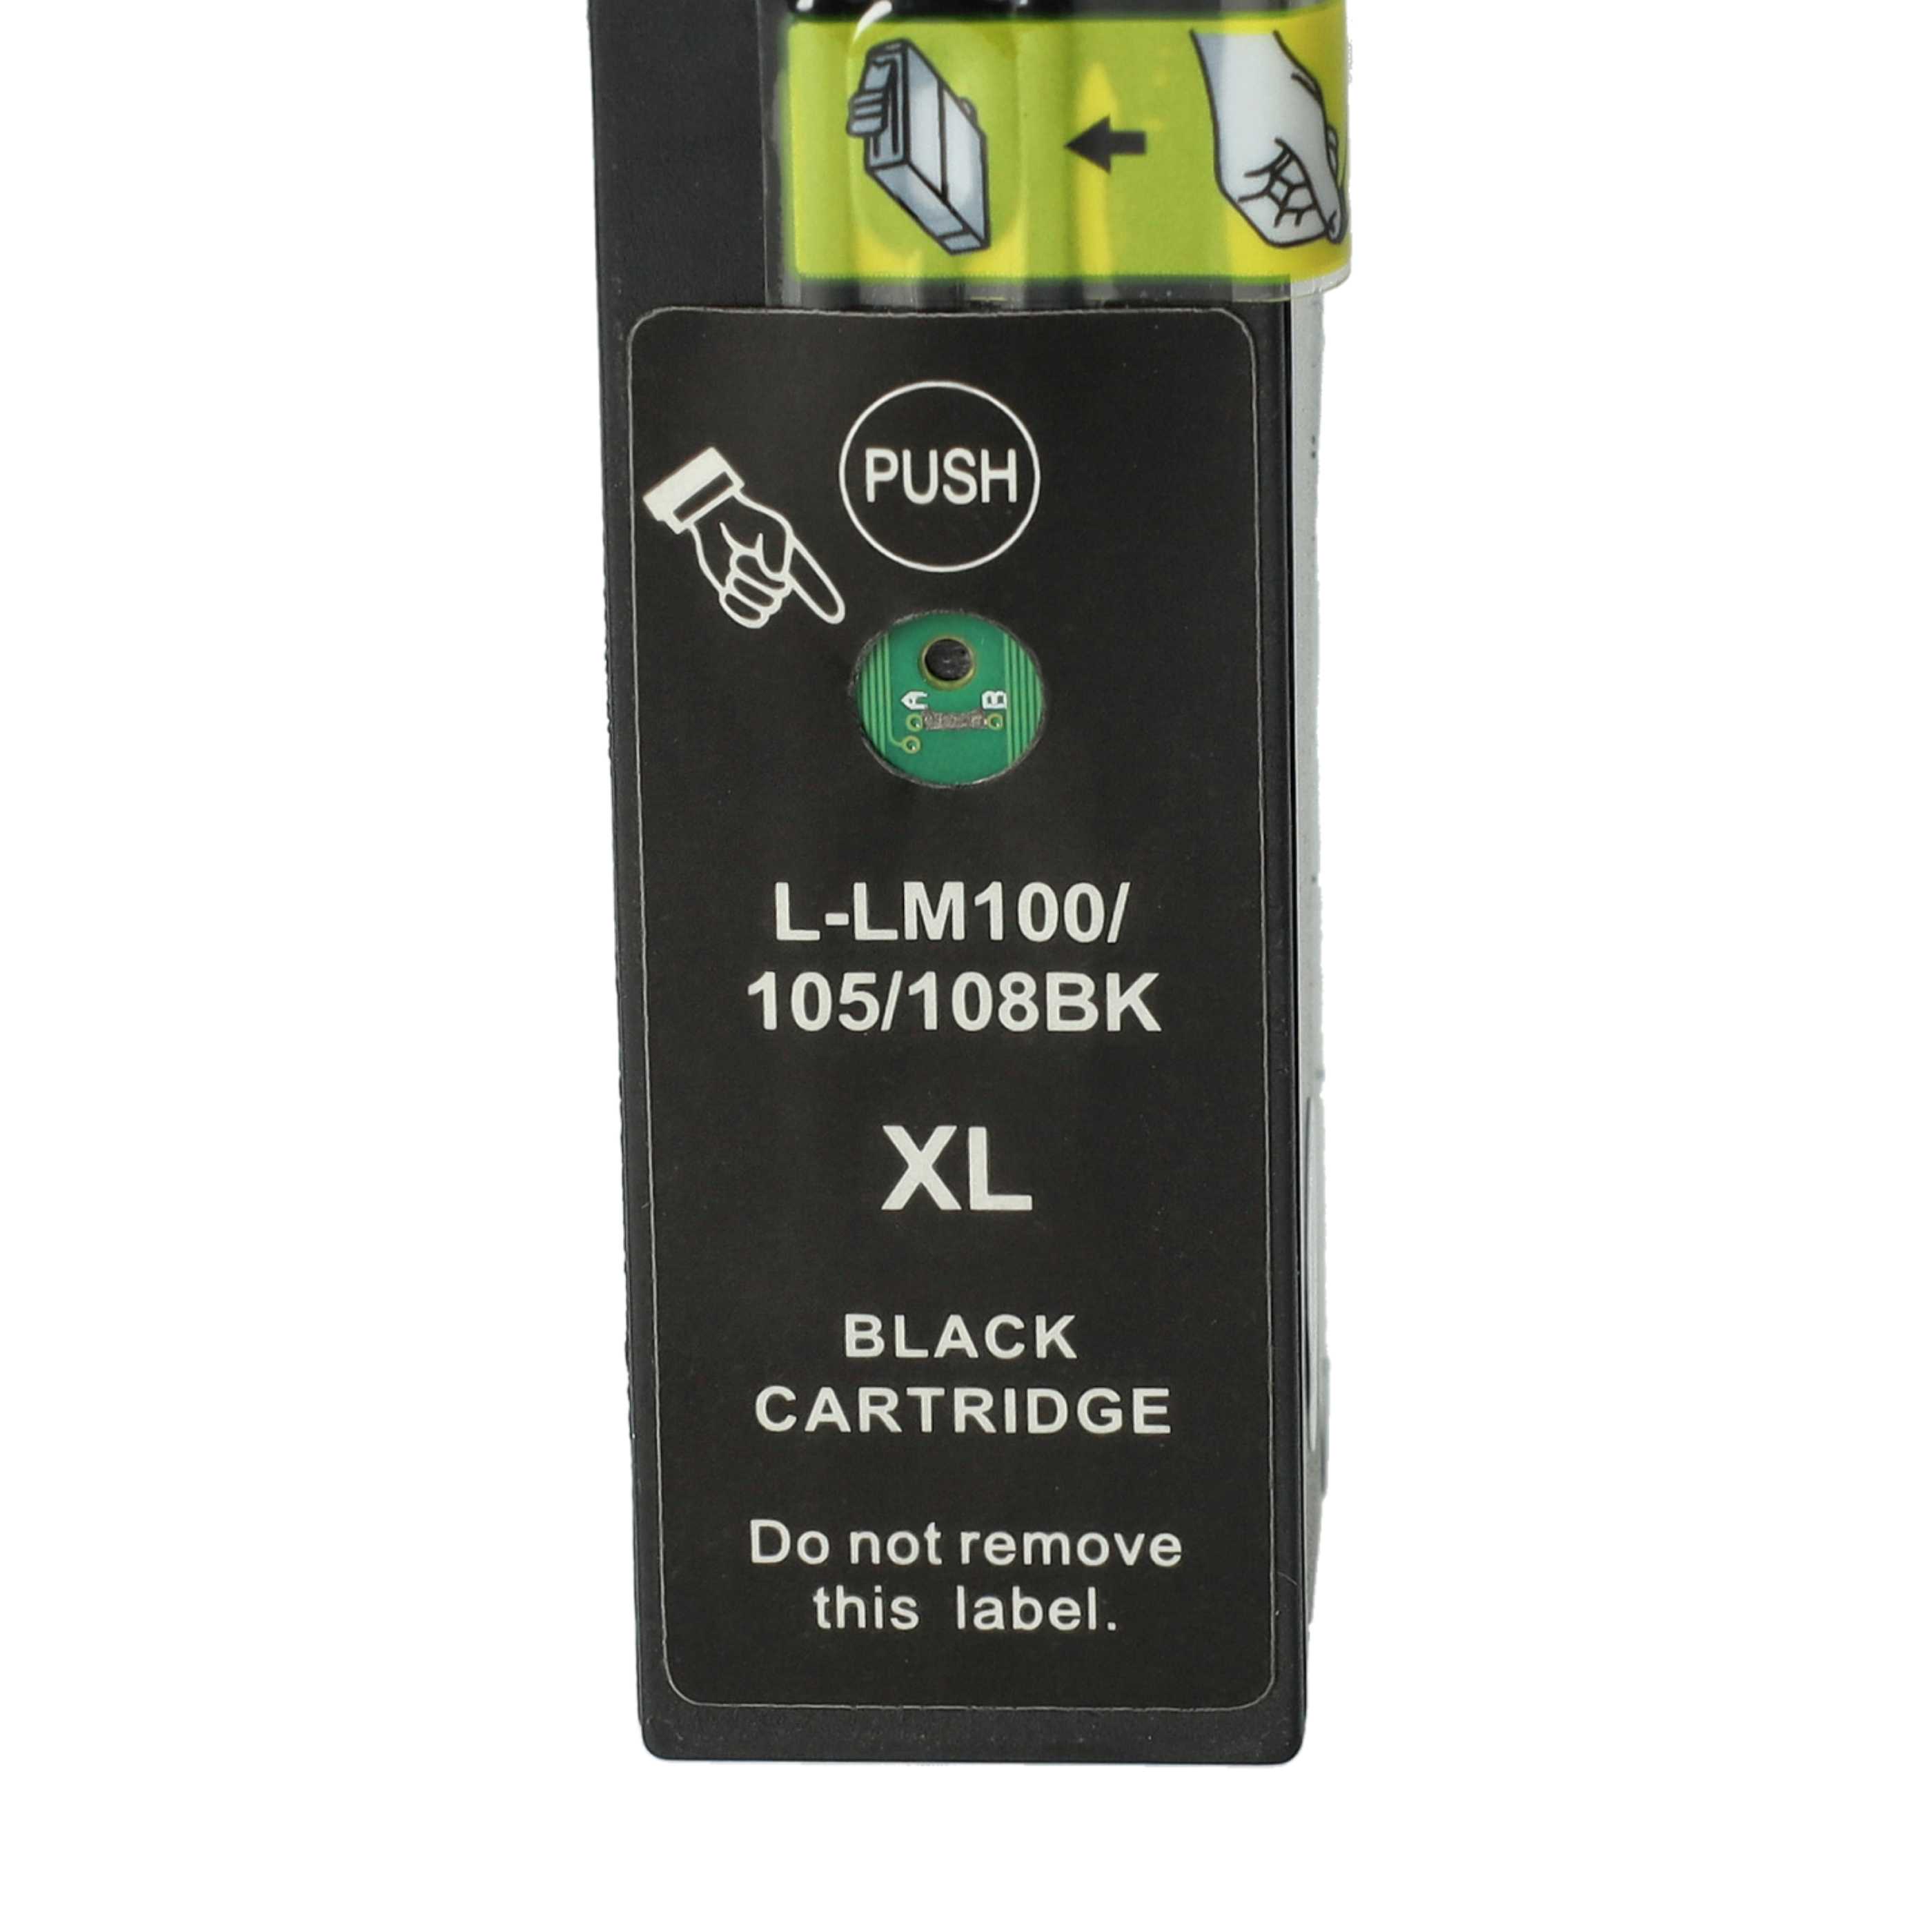 4x Tintenpatronen als Ersatz für Lexmark 100XL, 100XLA, 100 XL, 100 für Lexmark S815 Drucker - B/C/M/Y